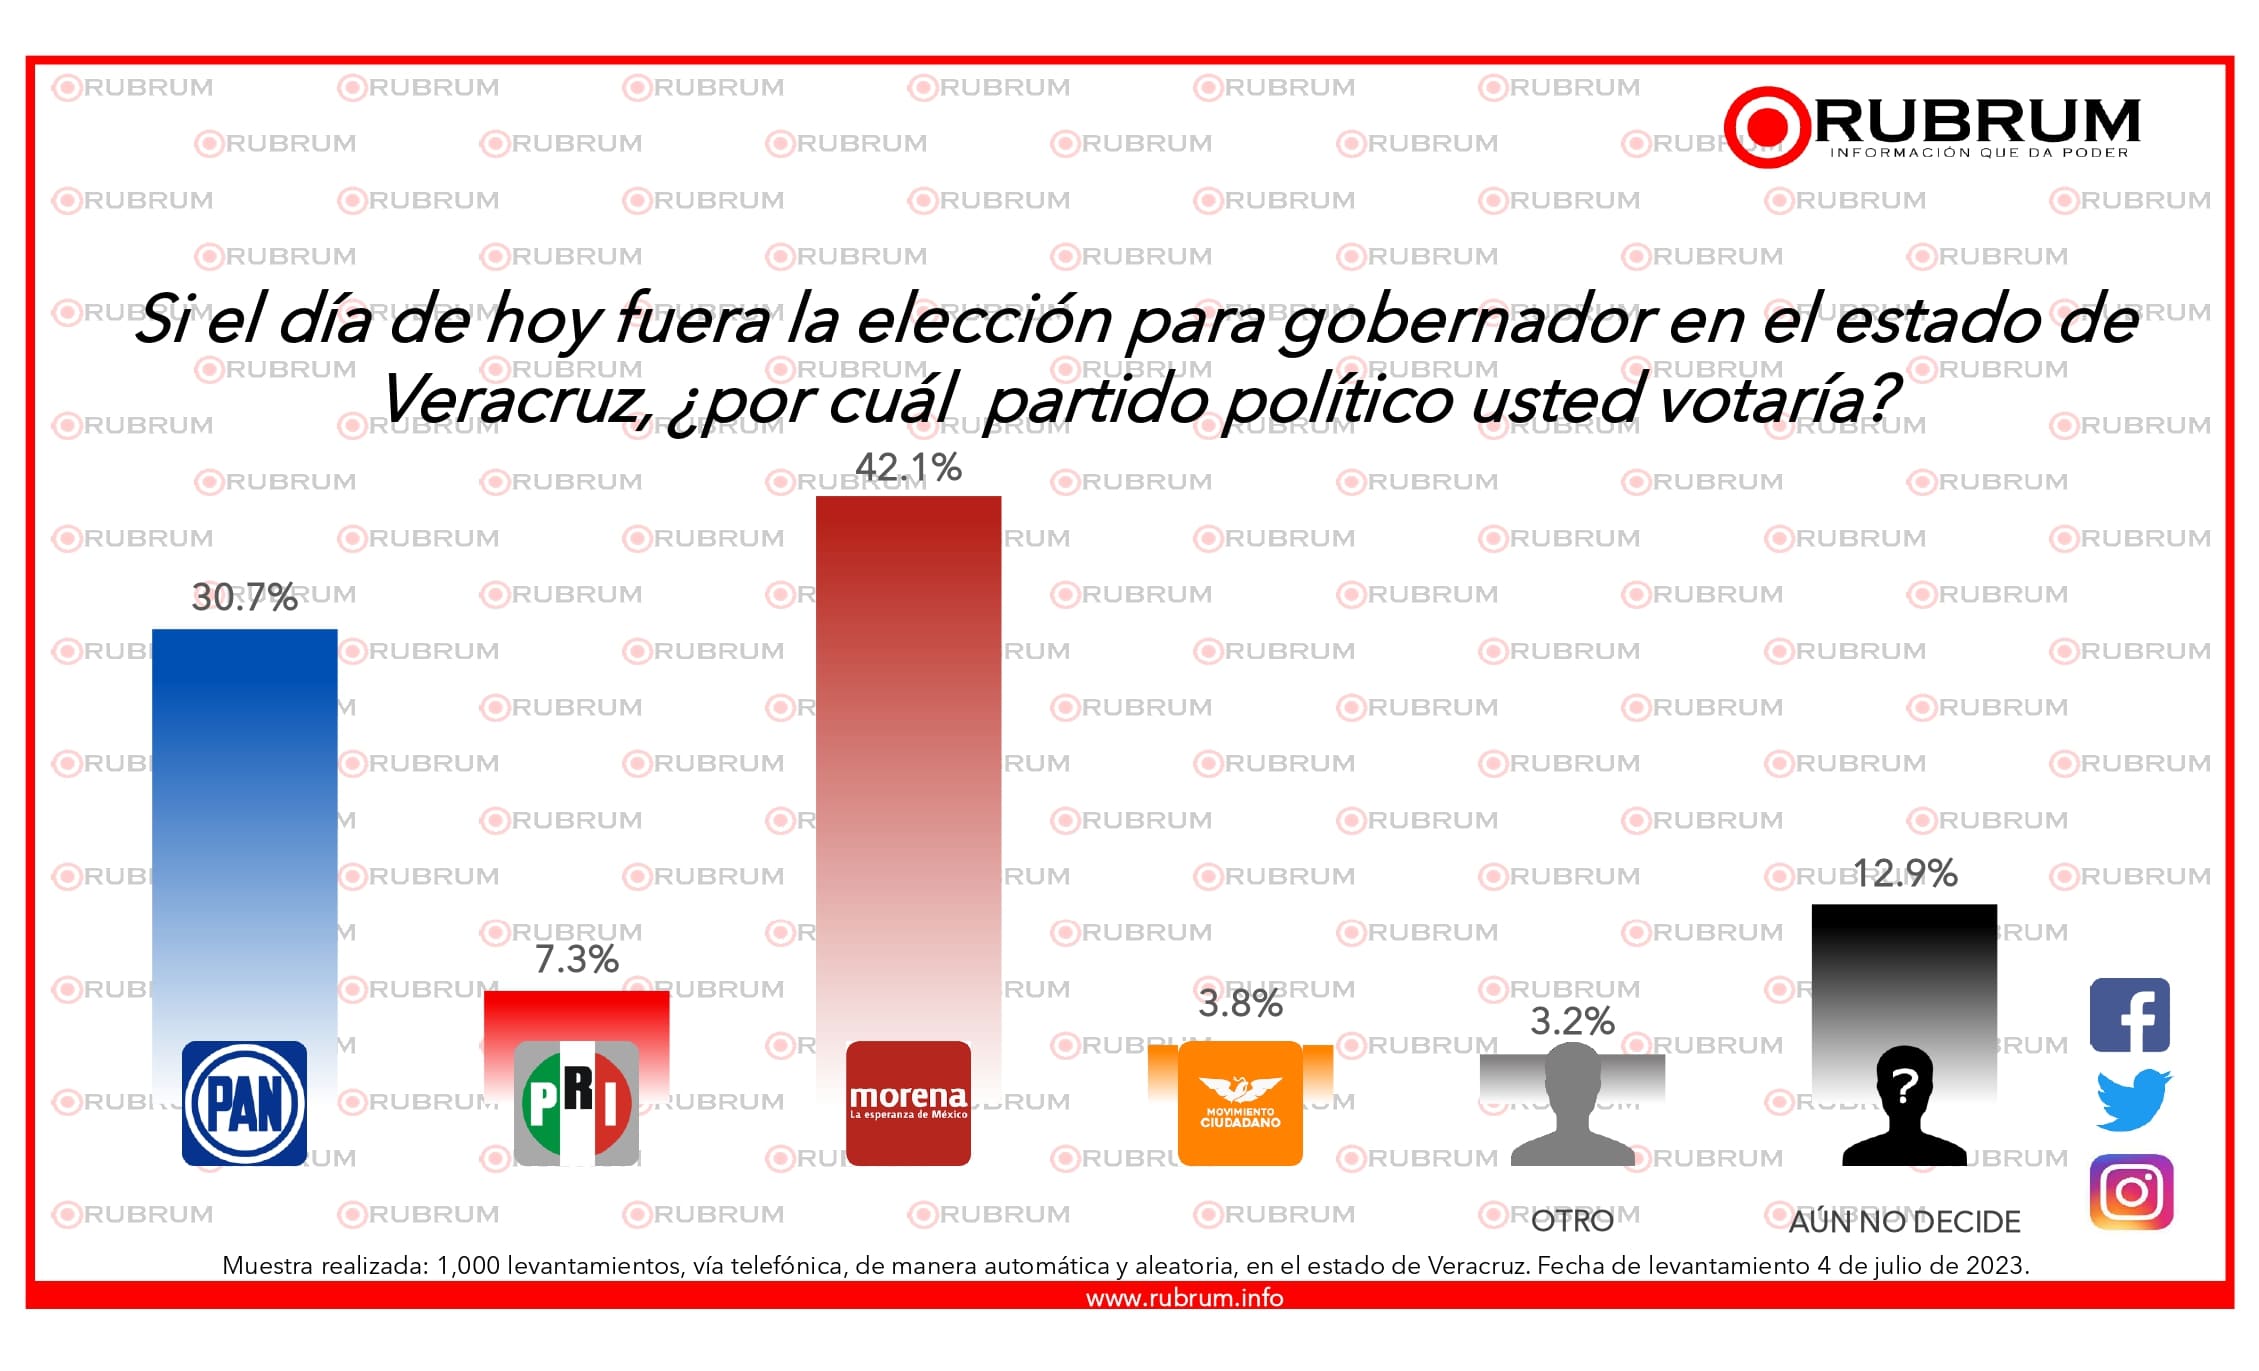 Partido Acción Nacional sobresale en las encuestas en comparación del Partido Revolucionario Institucional con una ventaja del 23.4%. Imagen: Rubrum. 